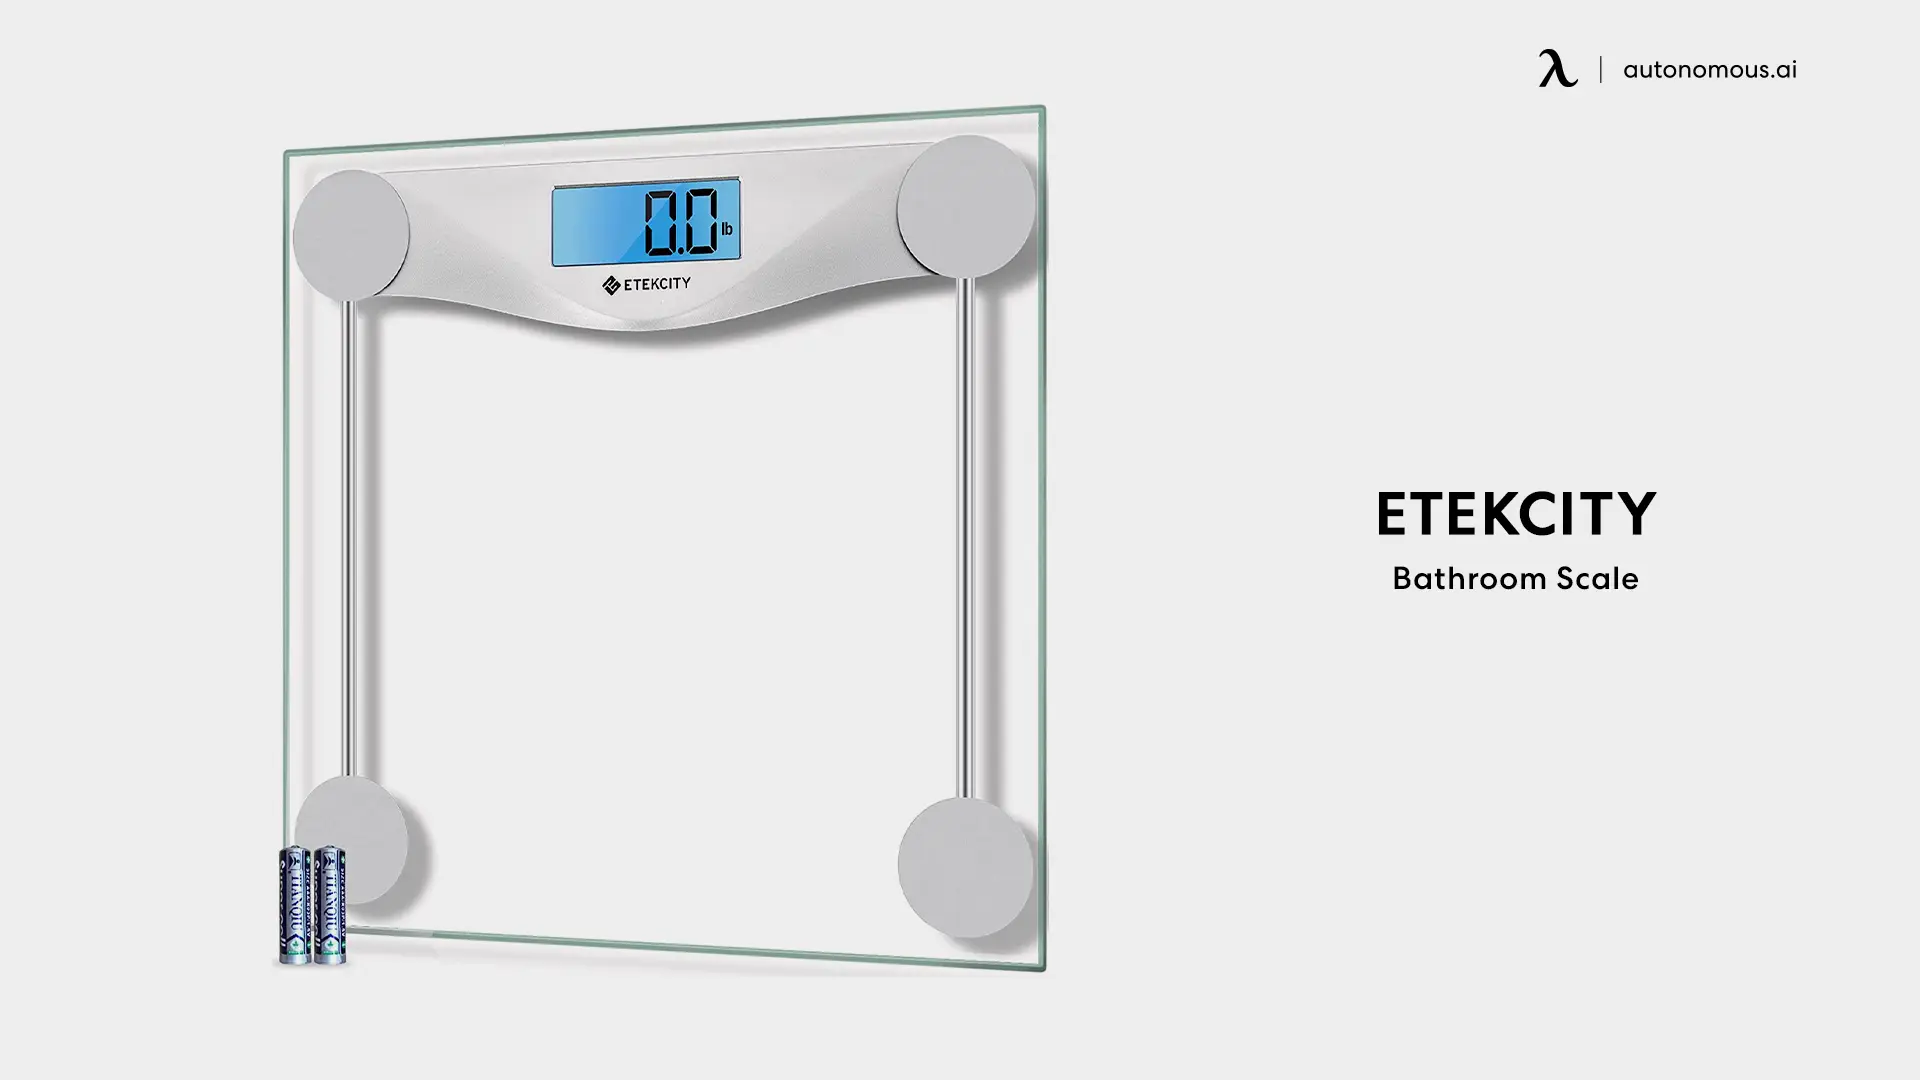 Etekcity Bathroom Scale